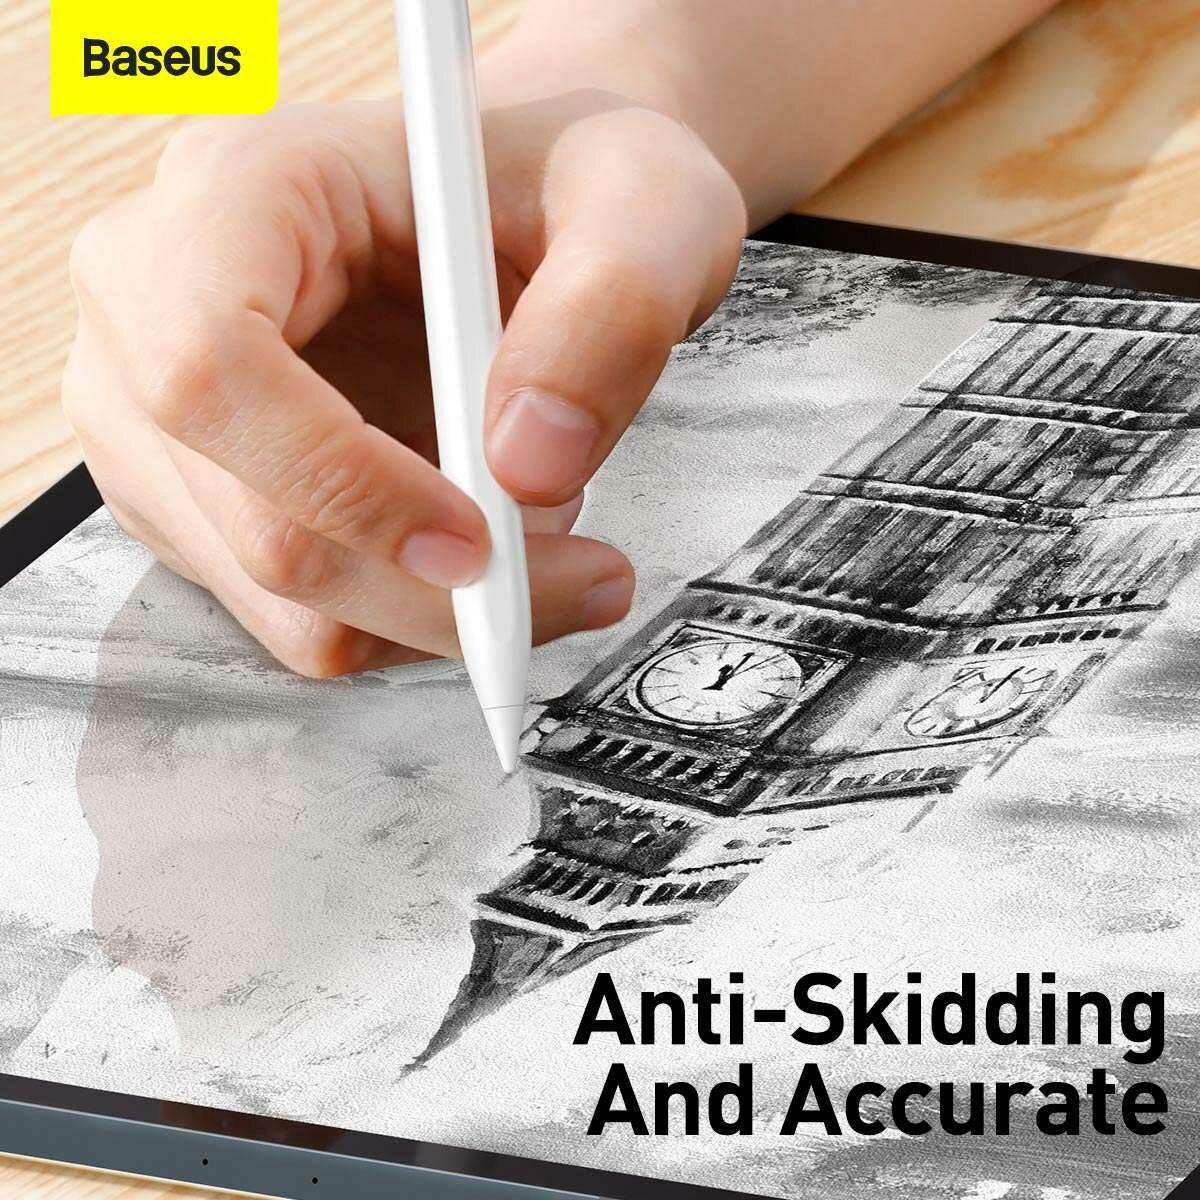 Baseus Tablet kiegészítő, Toll Smooth Writing Capacitive Stylus fejek (2db / doboz), fehér (SXBC010002)